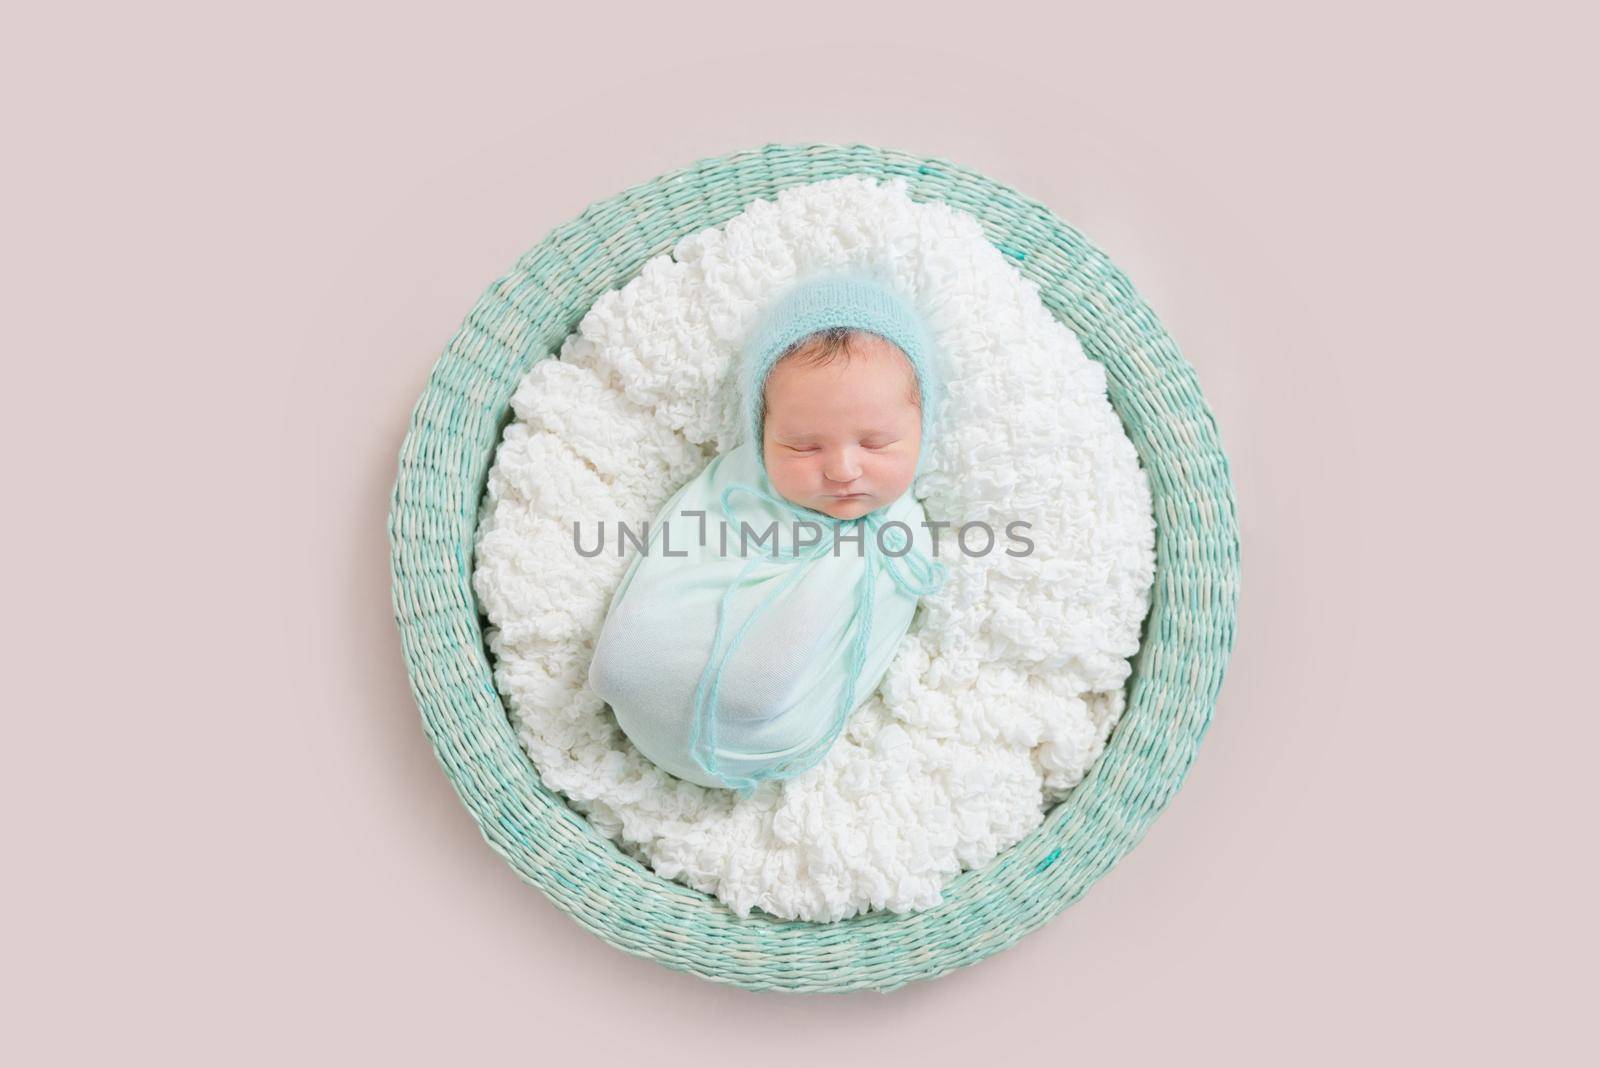 baby wrapped in blue blanket in basket, topview by tan4ikk1